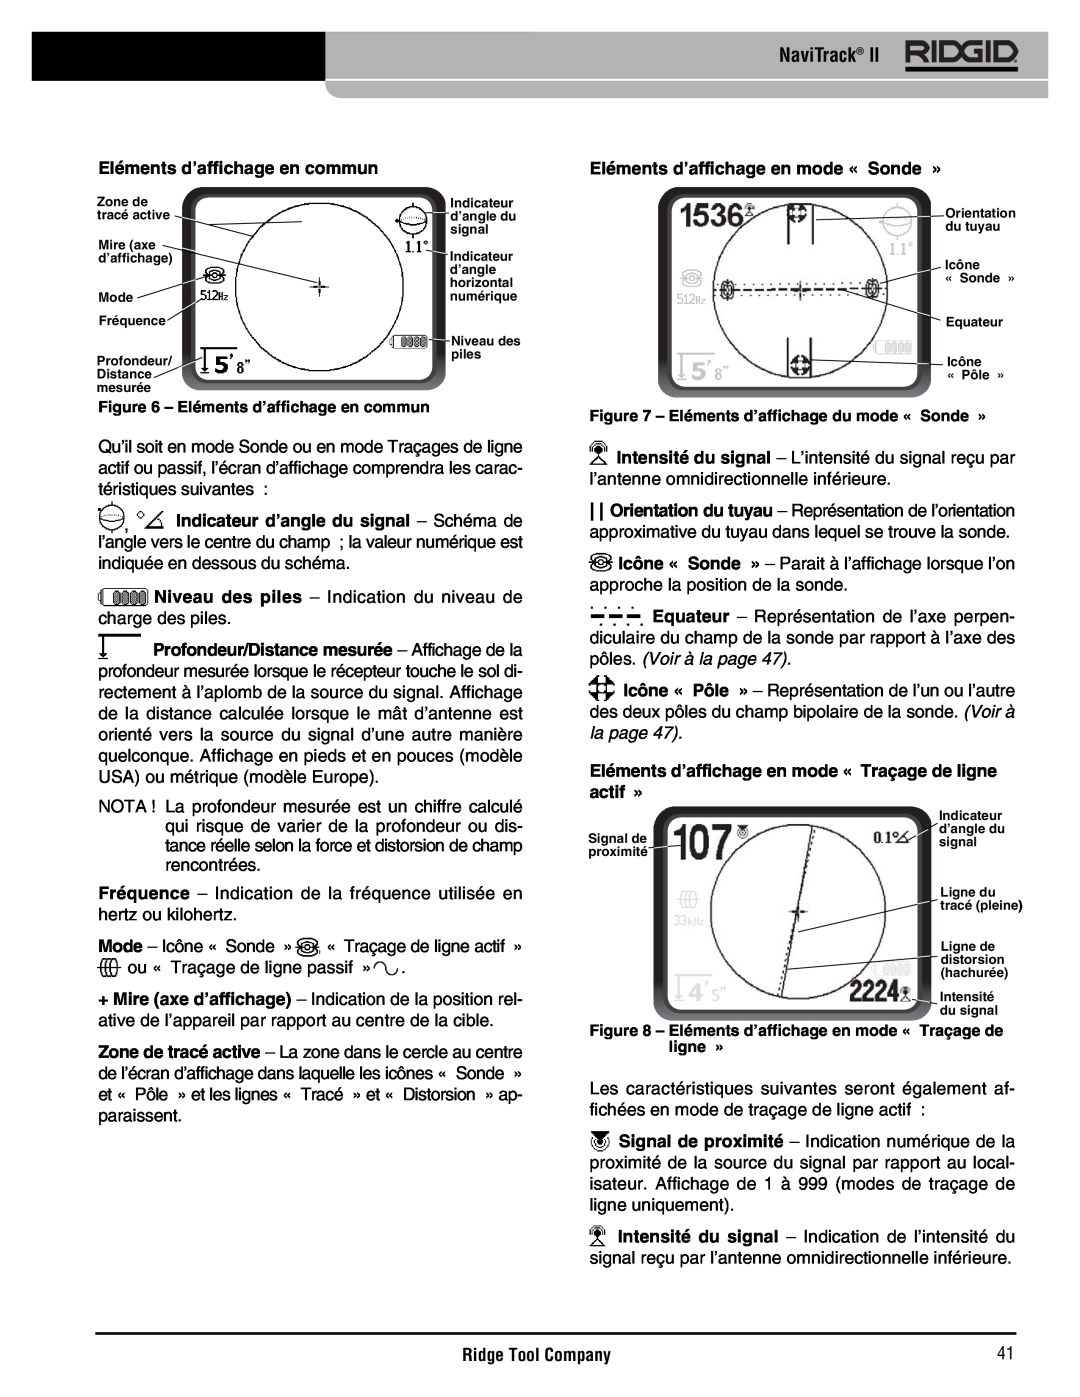 RIDGID Metal Detector manual Eléments d’affichage en commun, Eléments d’affichage en mode « Sonde », NaviTrack 